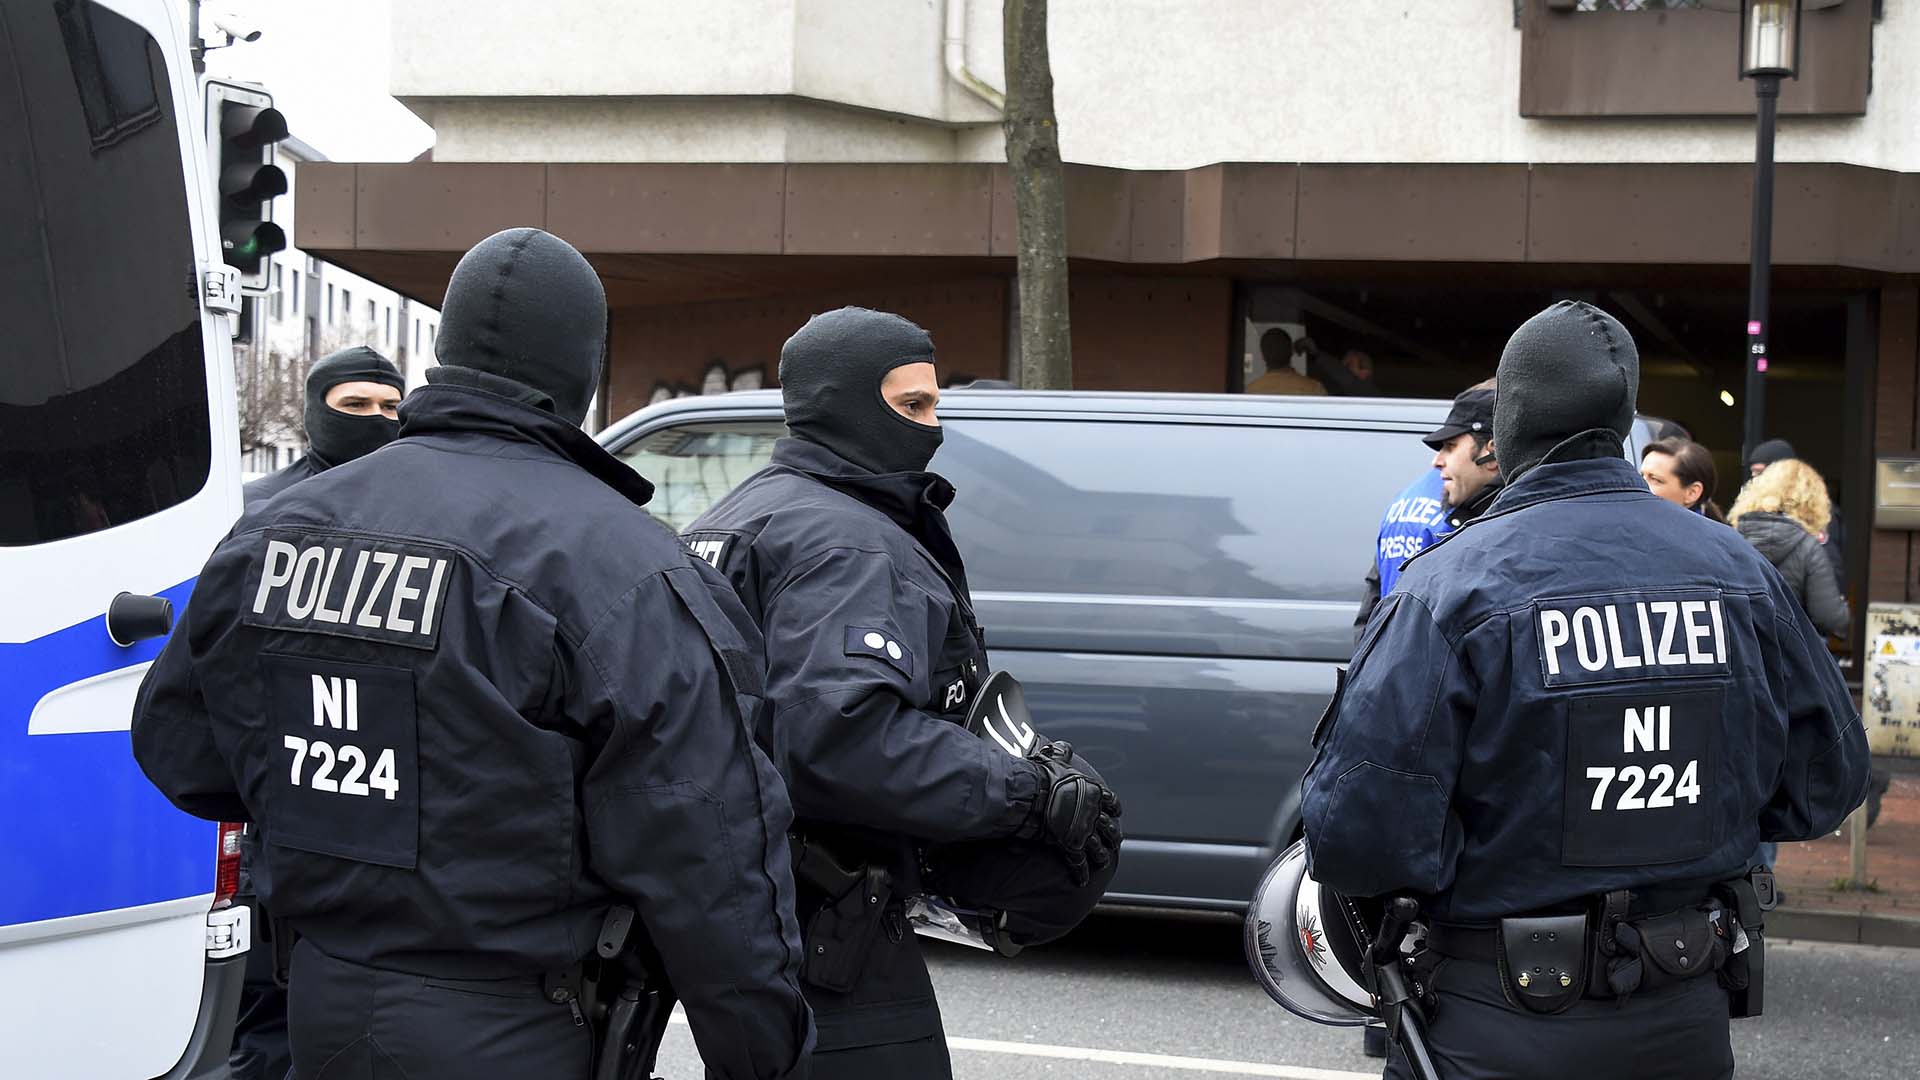 La policía alemana desmantela una banda de ladrones europea con 500 miembros